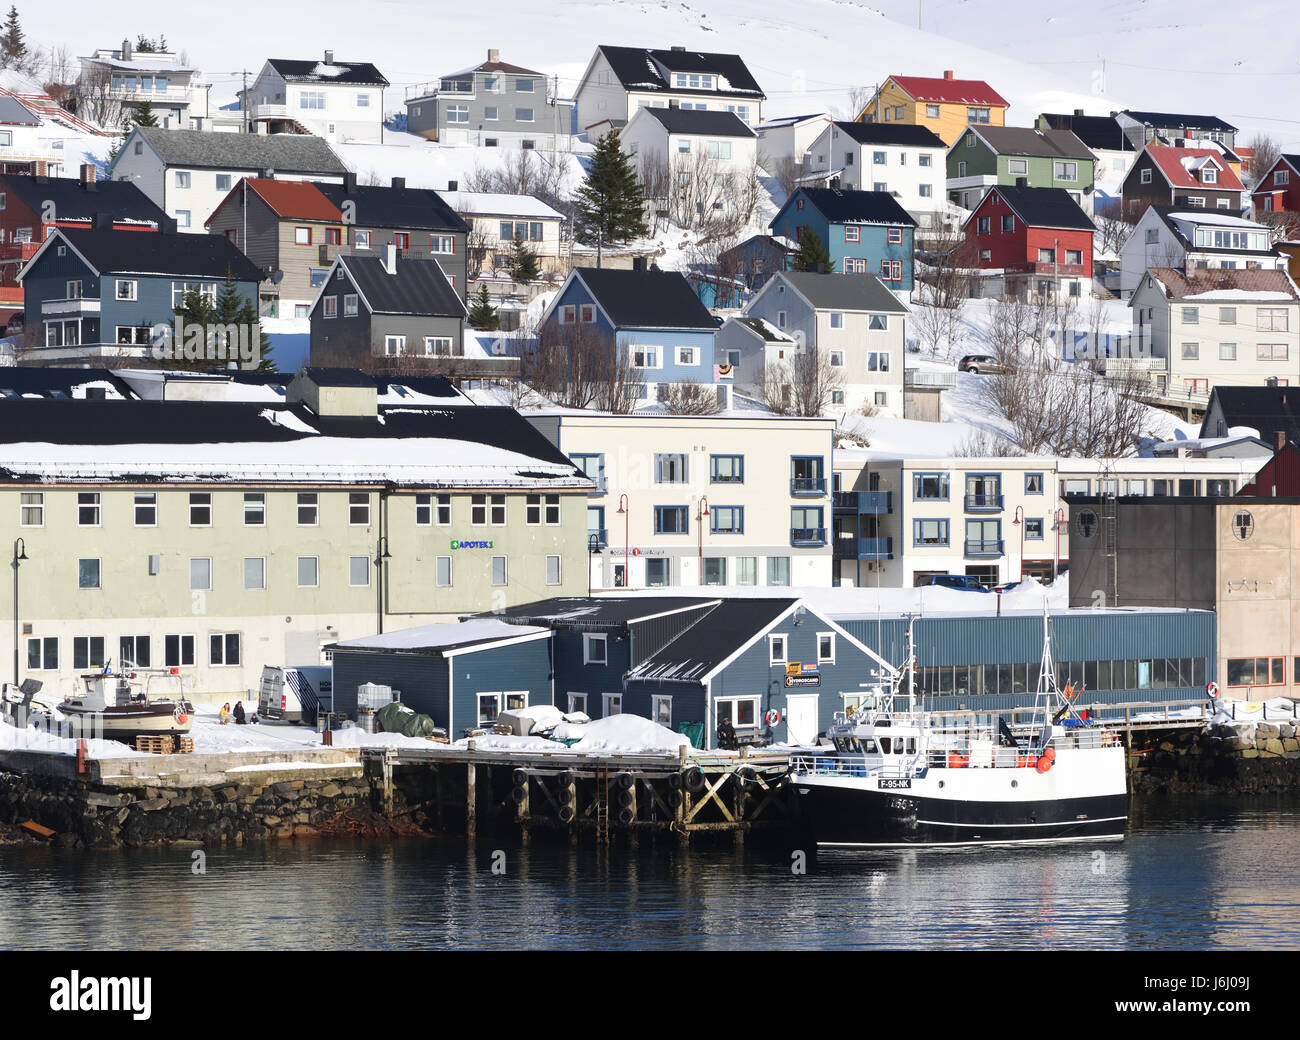 Una barca da pesca nel porto di Honningsvag, la città più settentrionale della Norvegia. Honningsvåg, Nordkapp, Finnmark, Norvegia. Foto Stock